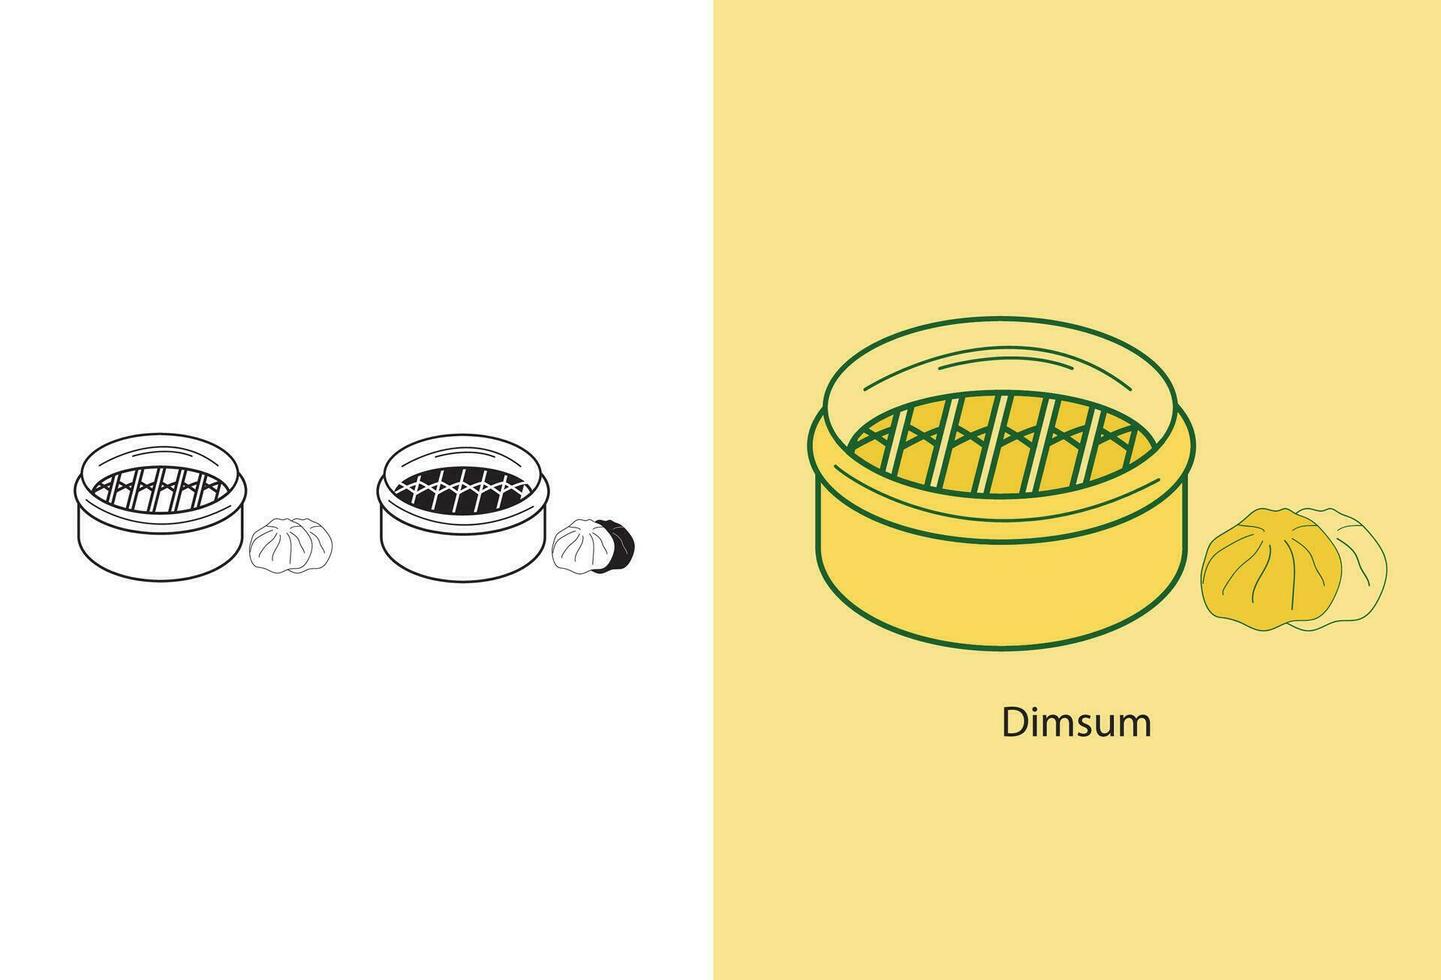 dimsum, le vecteur icône dépeint traditionnel chinois nourriture servi sur une plaque, avec divers asiatique gourmandises tel comme chinois cuisine, asiatique boulangerie articles avec remplissages, à la vapeur petits pains,